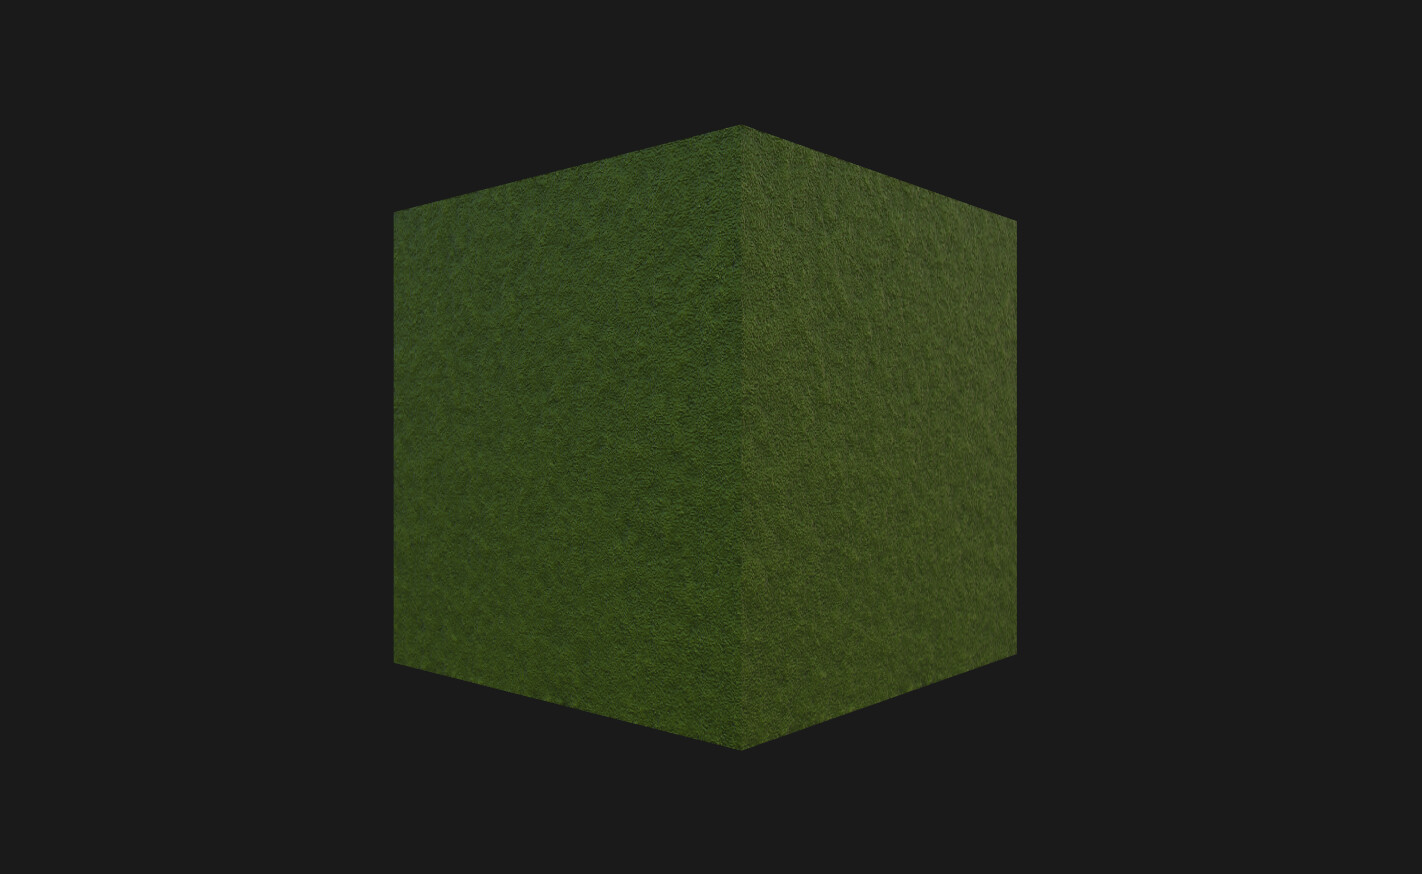 Cube render in shadermap